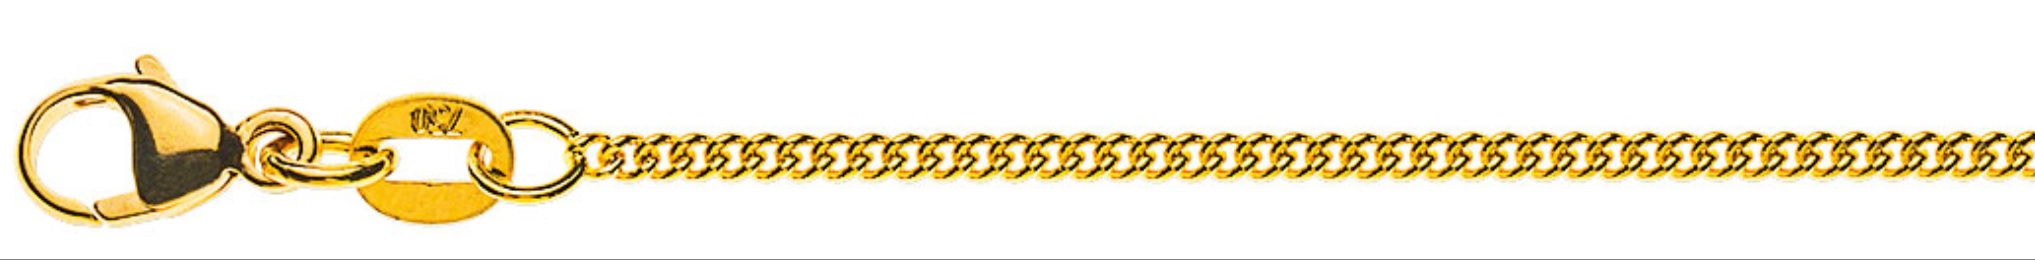 AURONOS Prestige Halskette Gelbgold 18K Rundpanzerkette 42cm 1.6mm